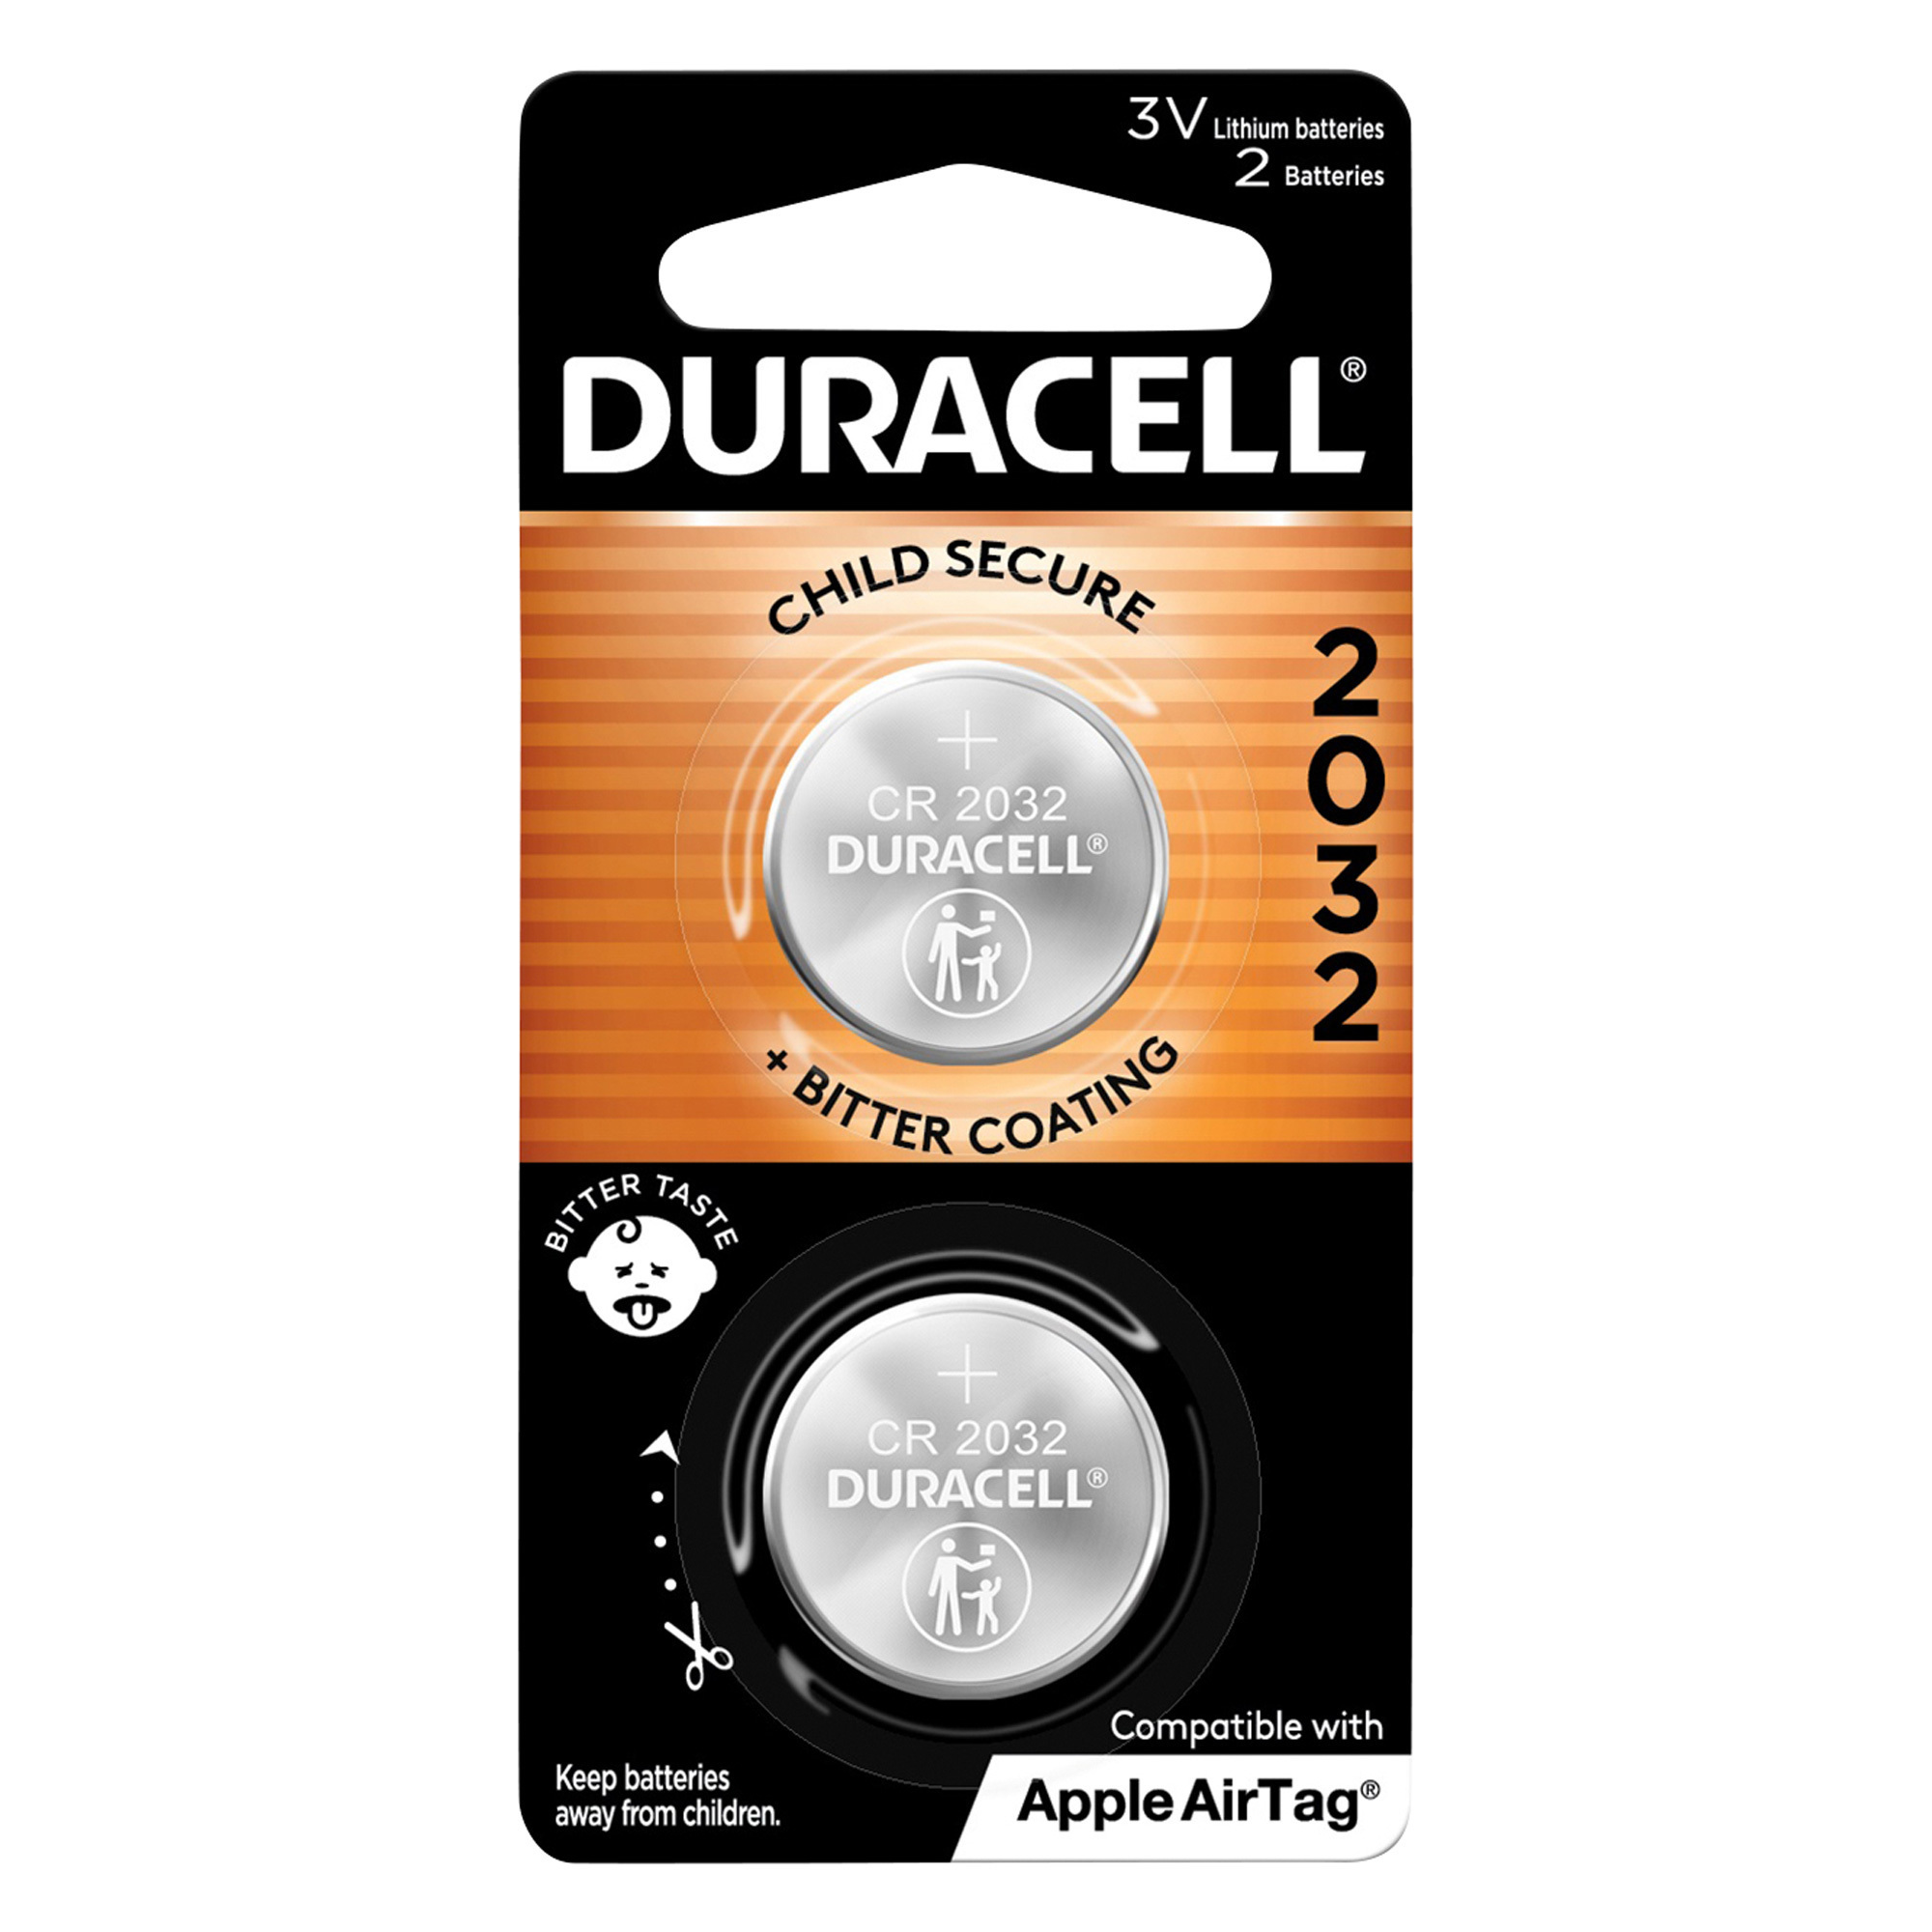 Duracell 2032 Lithium Coin Batteries â 2-Pack